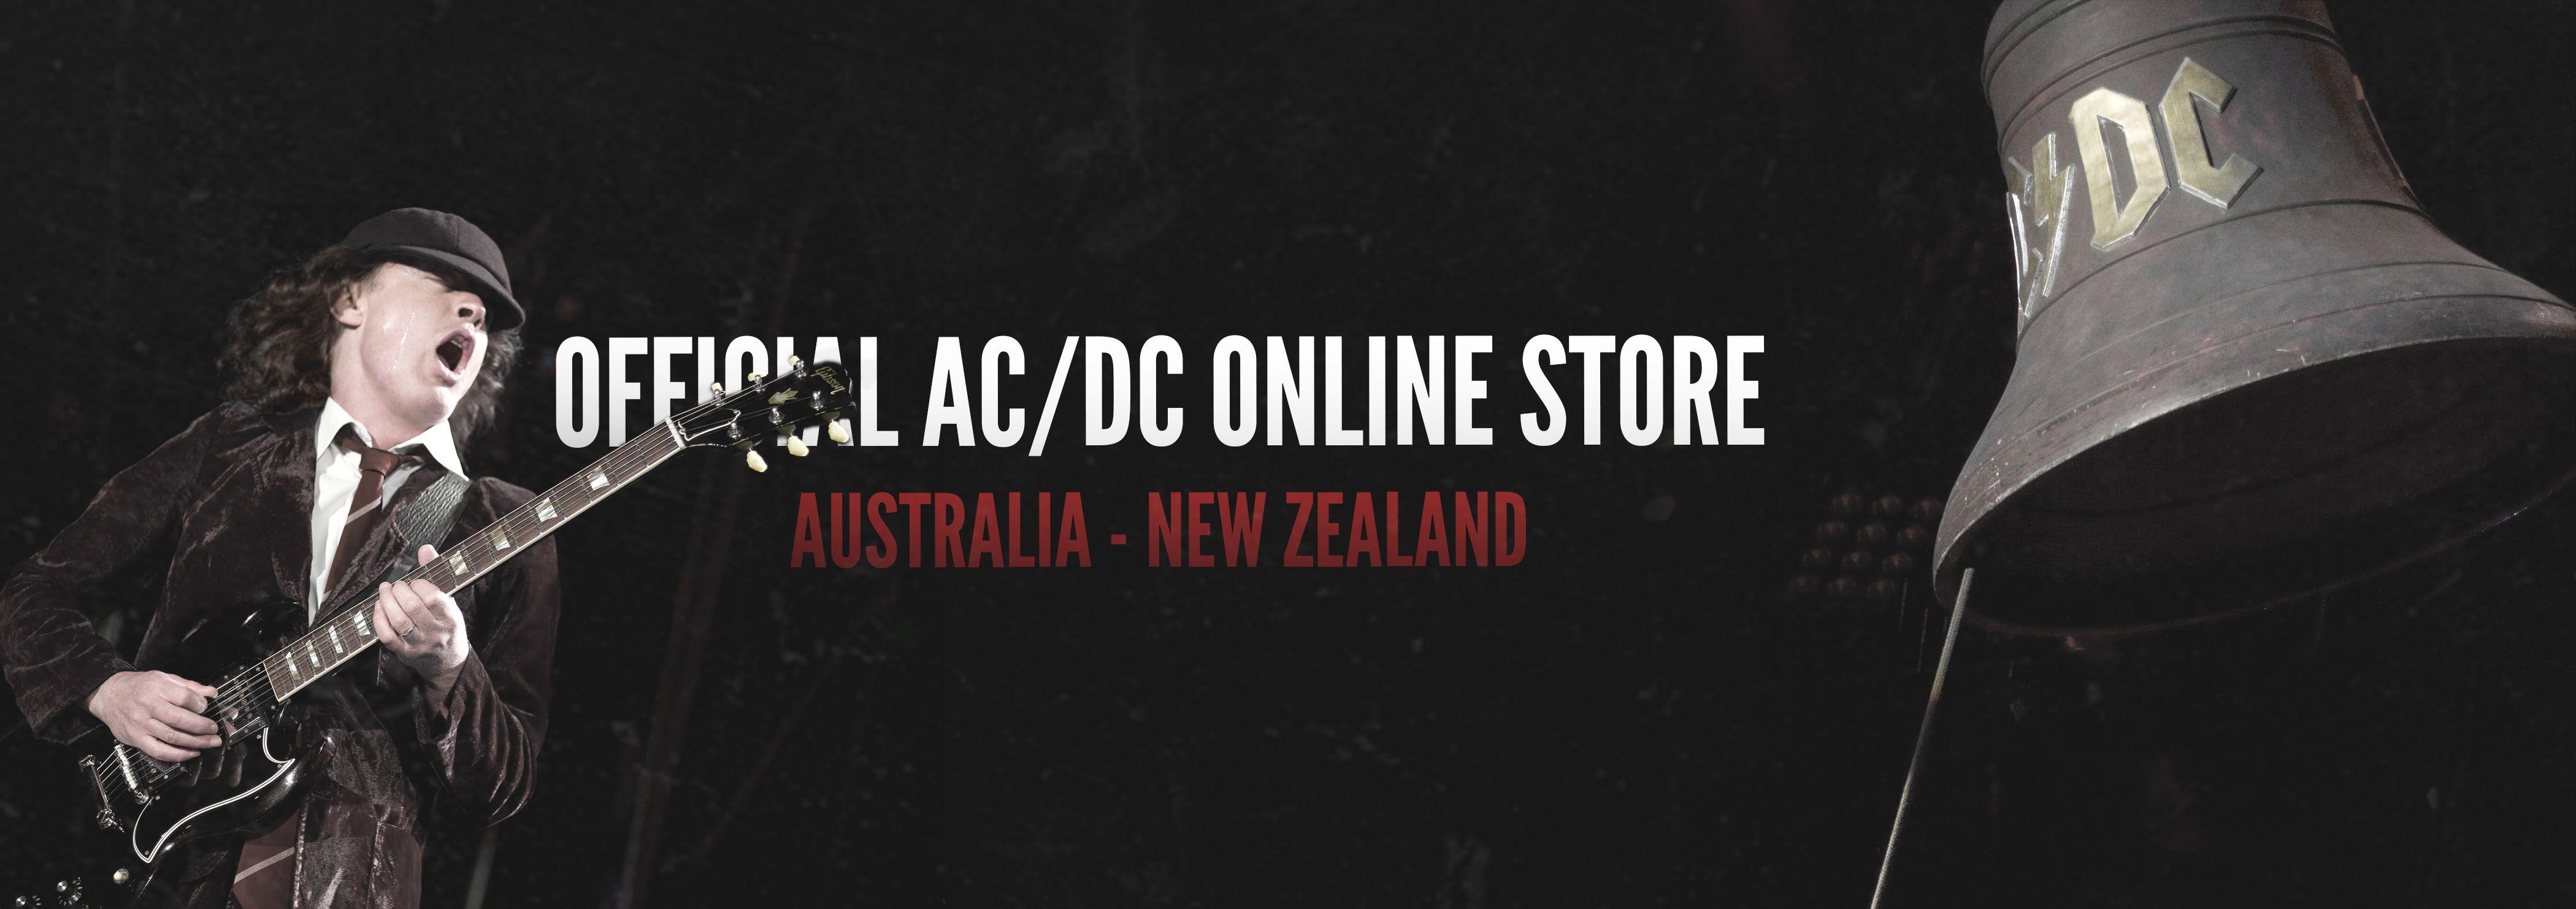 Official AC DC Logo - AC/DC - Official AU/NZ Store